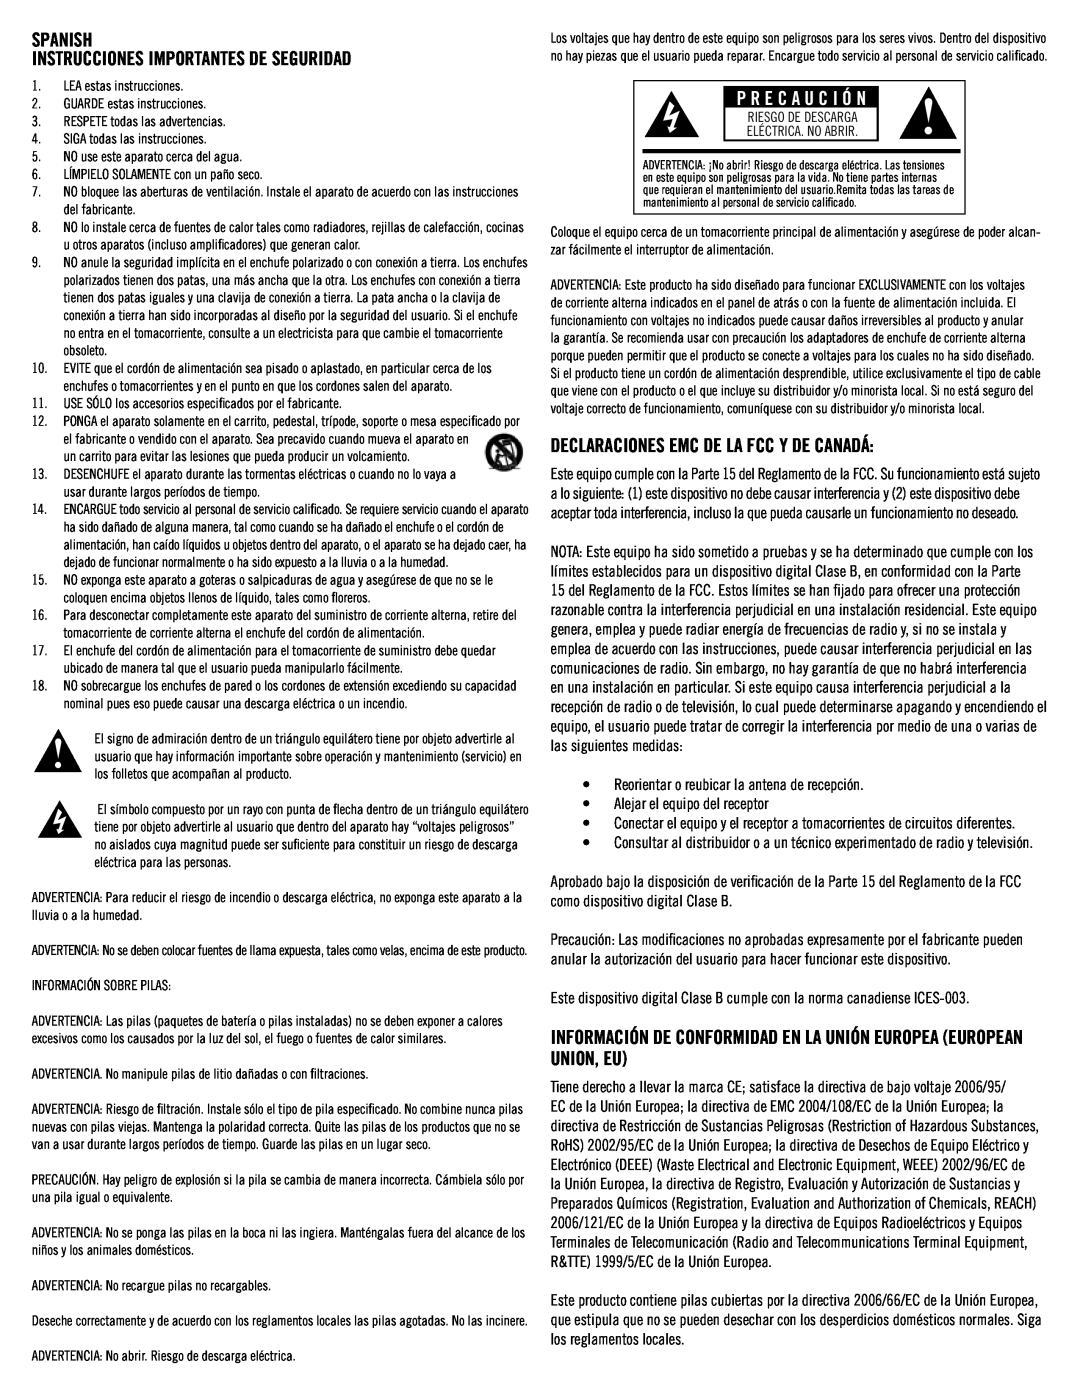 Klipsch SB3 P R E C A U C I Ó N, SPANISH Instrucciones importantes de seguridad, Declaraciones Emc De La Fcc Y De Canadá 